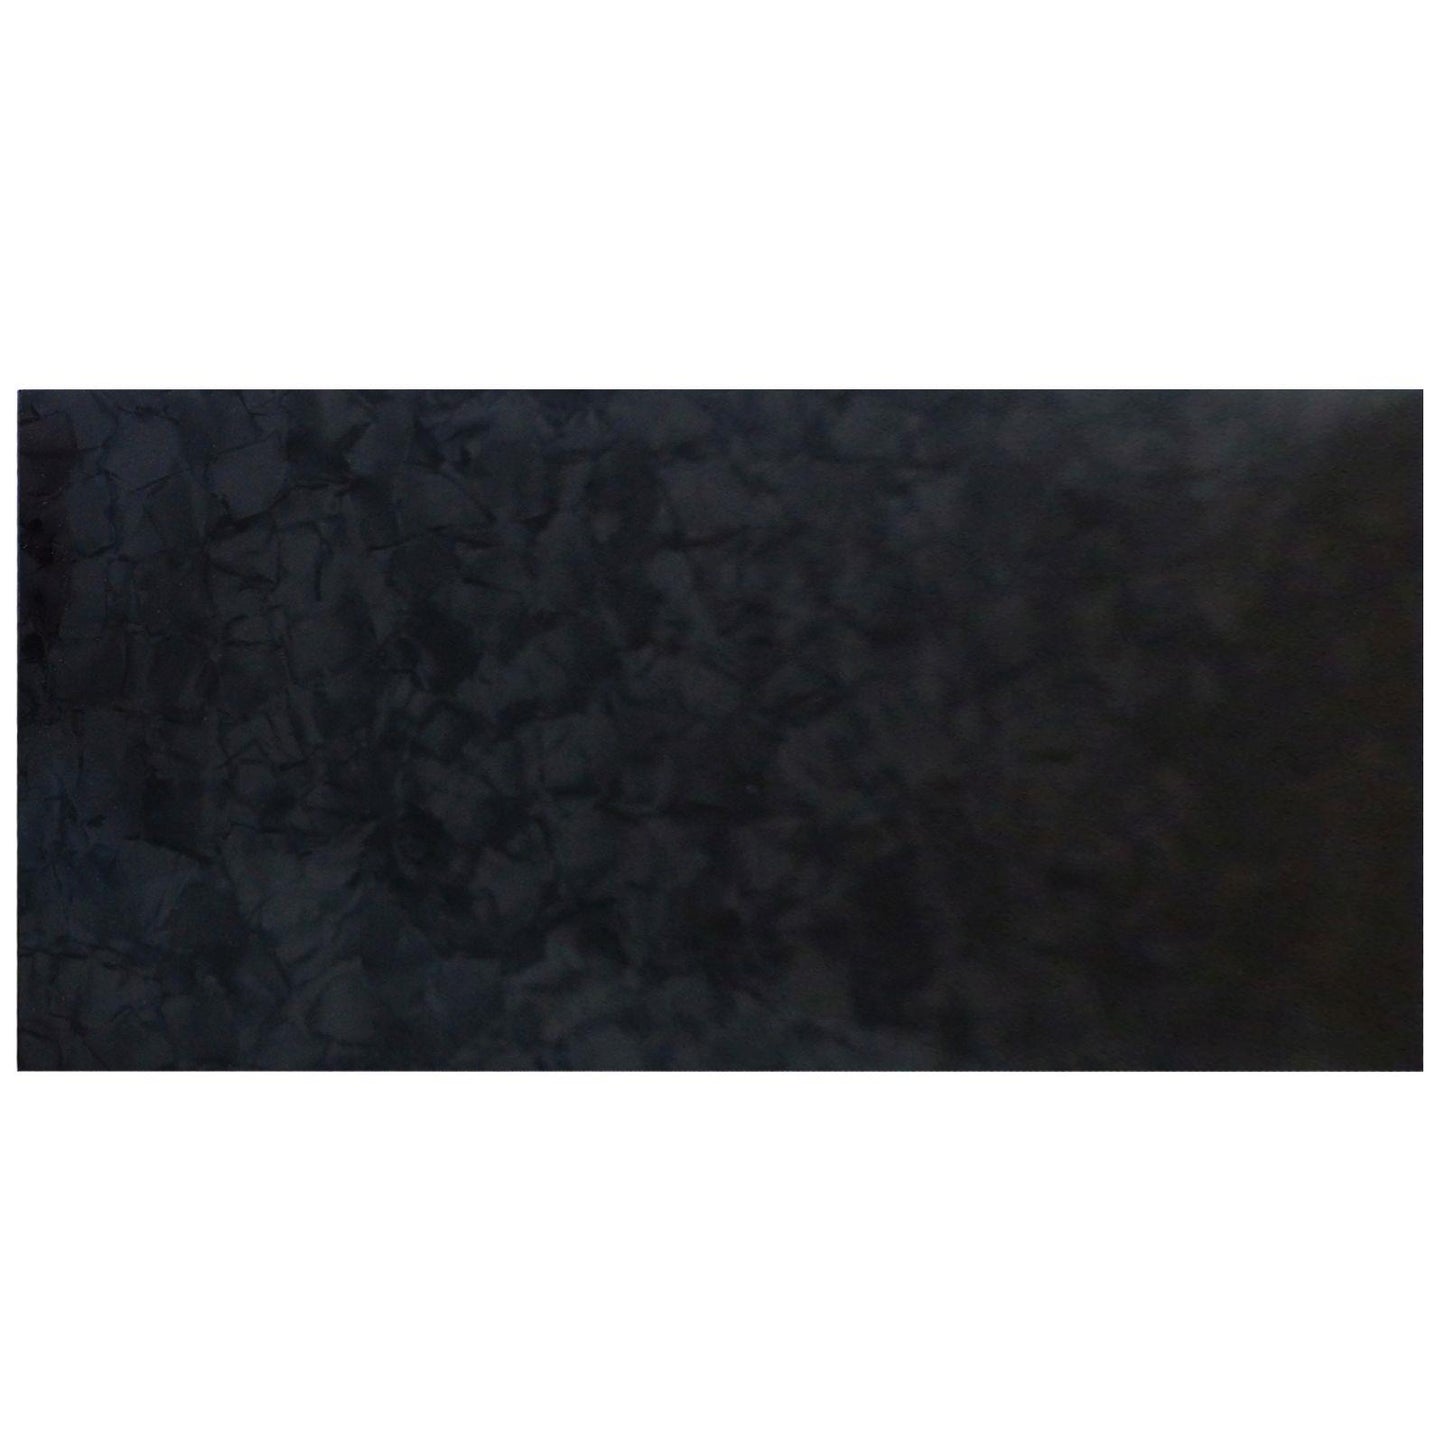 Incudo Black Pearloid Celluloid Sheet - 200x100x0.75mm (7.9x3.94x0.03")